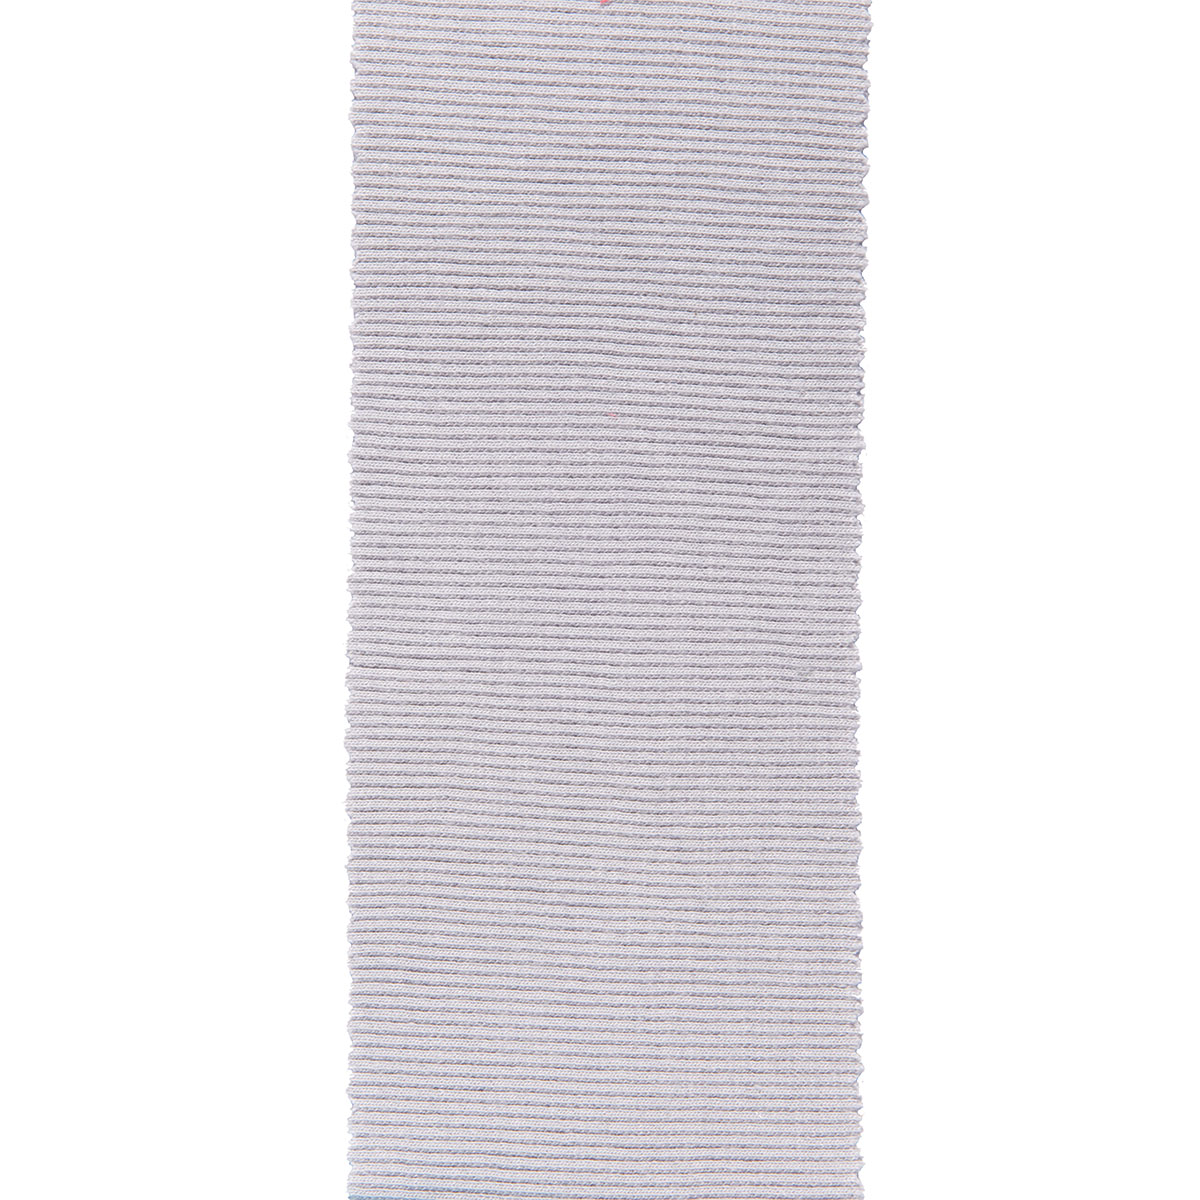 Dekostoff Gisele hellgrau in 40cm Breite (METERWARE) Baumwollstoff Stoff aus 97% Baumwolle